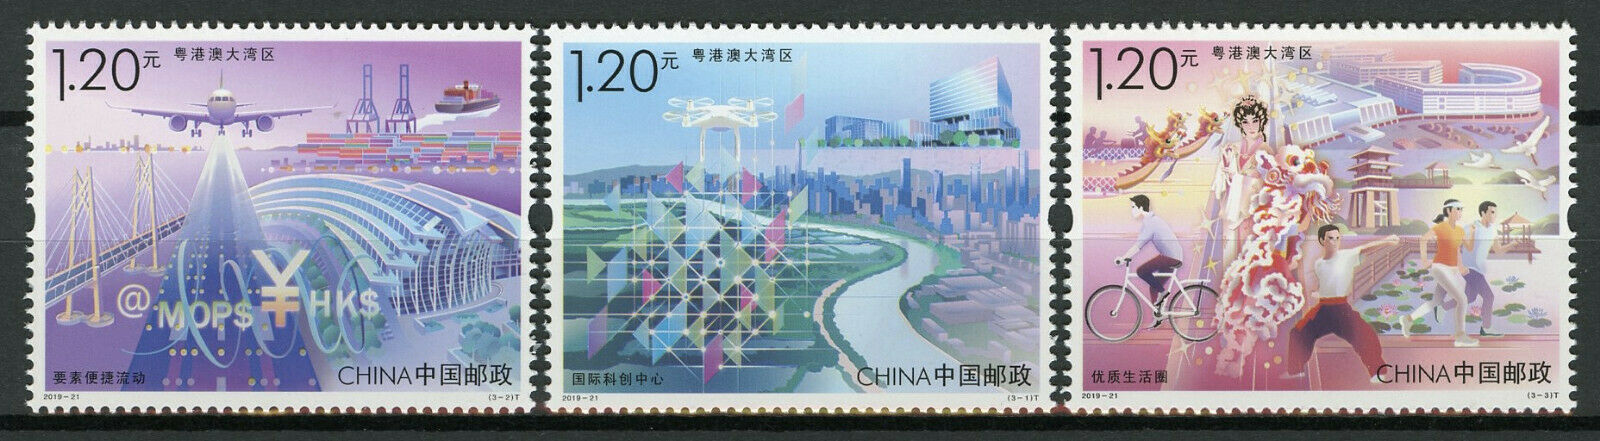 China Stamps 2019 MNH Guangdong Hongkong Macao Greater Bay Bridges 3v Set